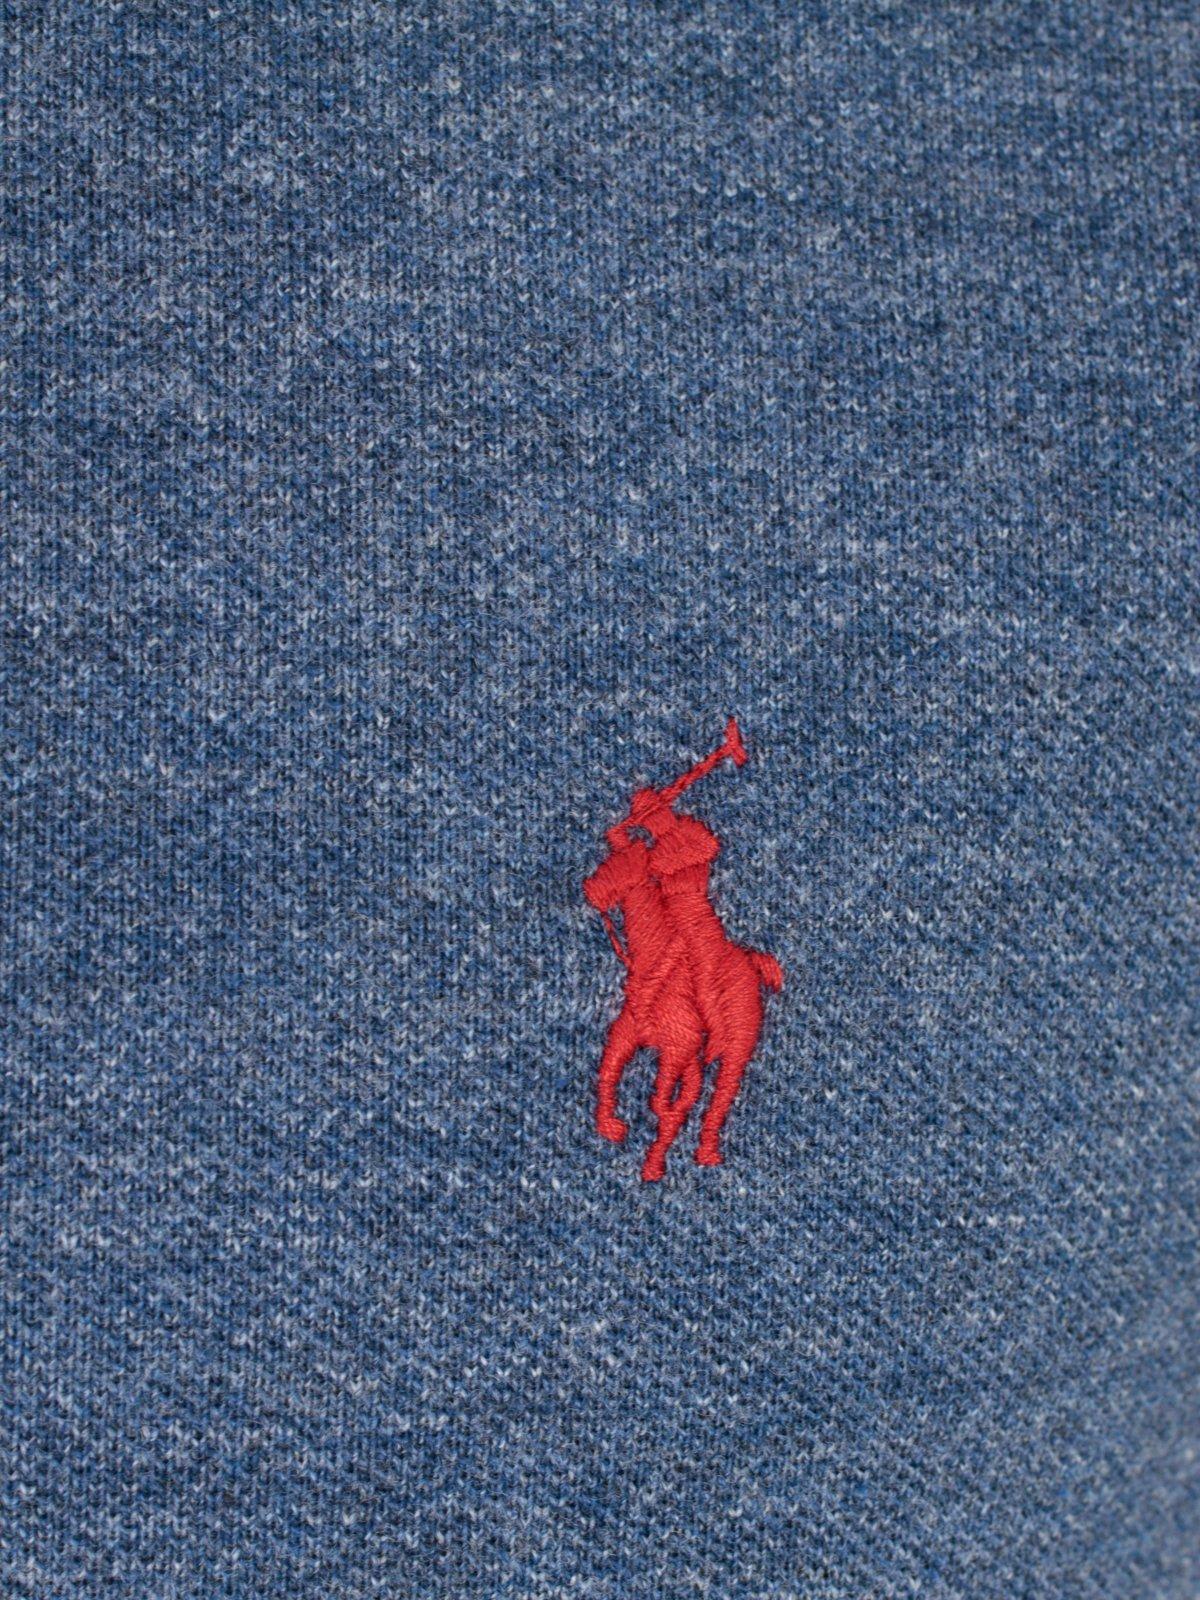 Shop Ralph Lauren Logo Embroidered Polo Shirt